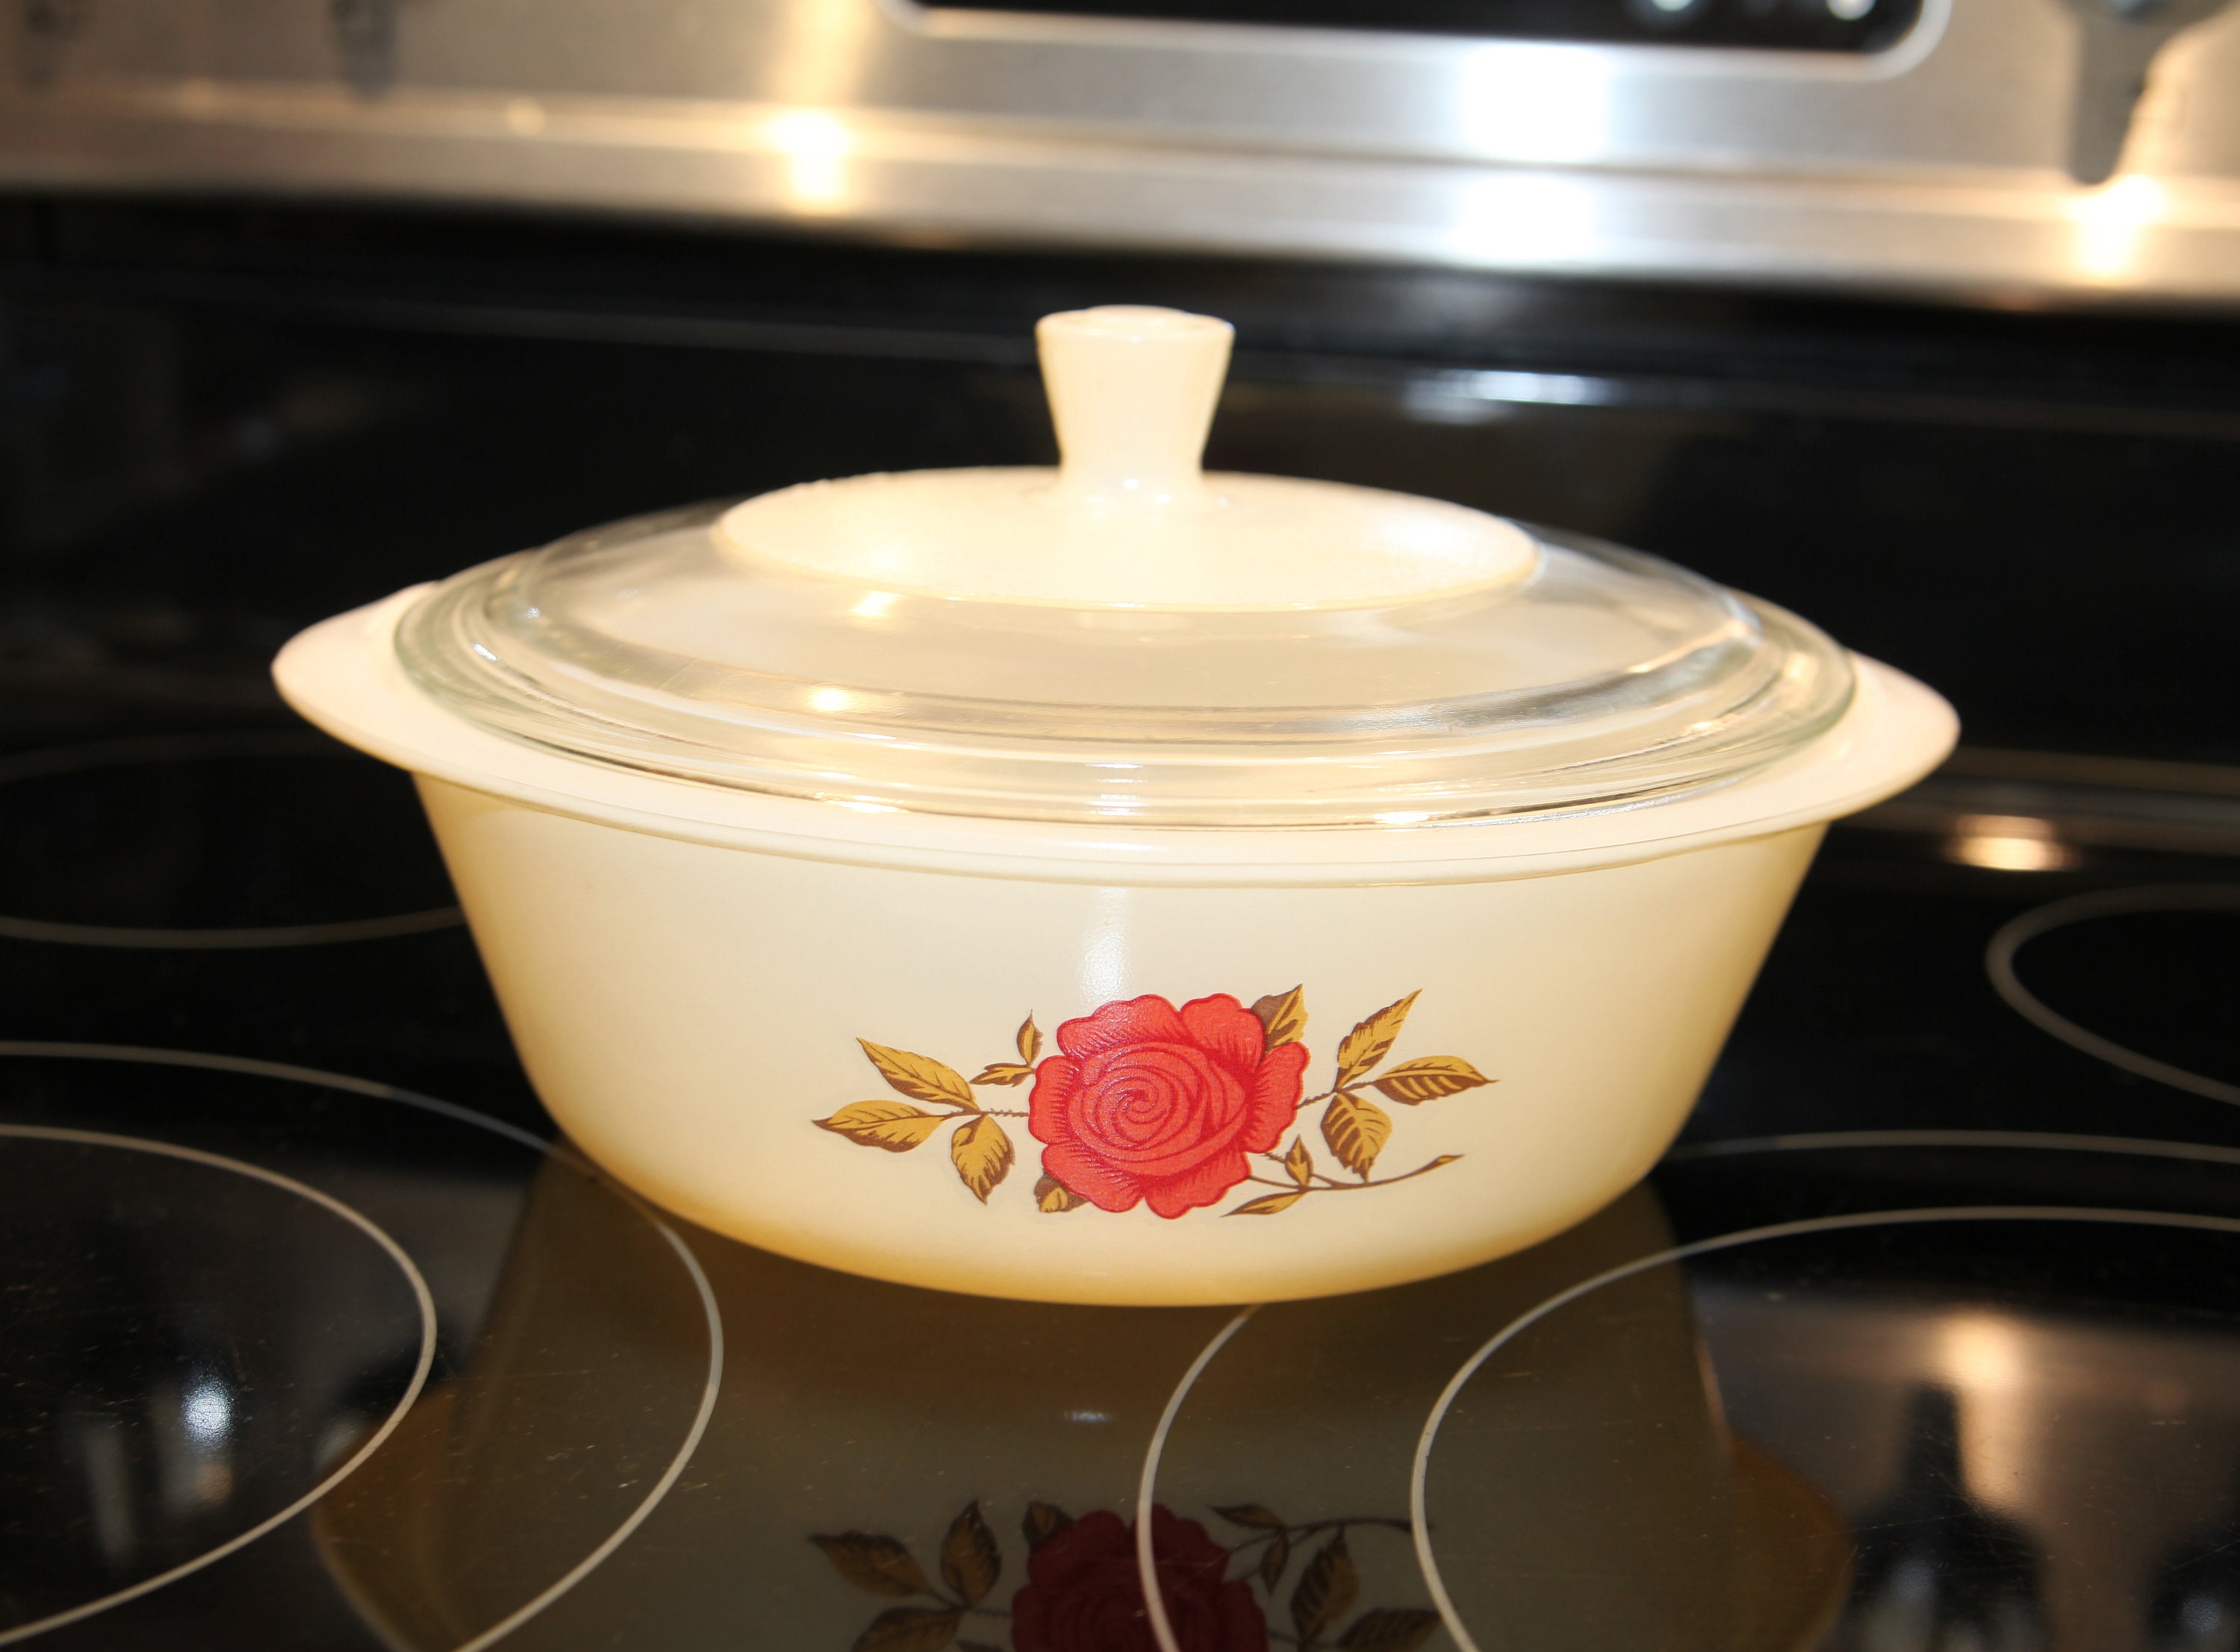 glasbake vintage blanc 2 quarts casserole dish avec couvercle en verre, rose rouge floral sur le devant, 10.5, 1950's b7-7-11